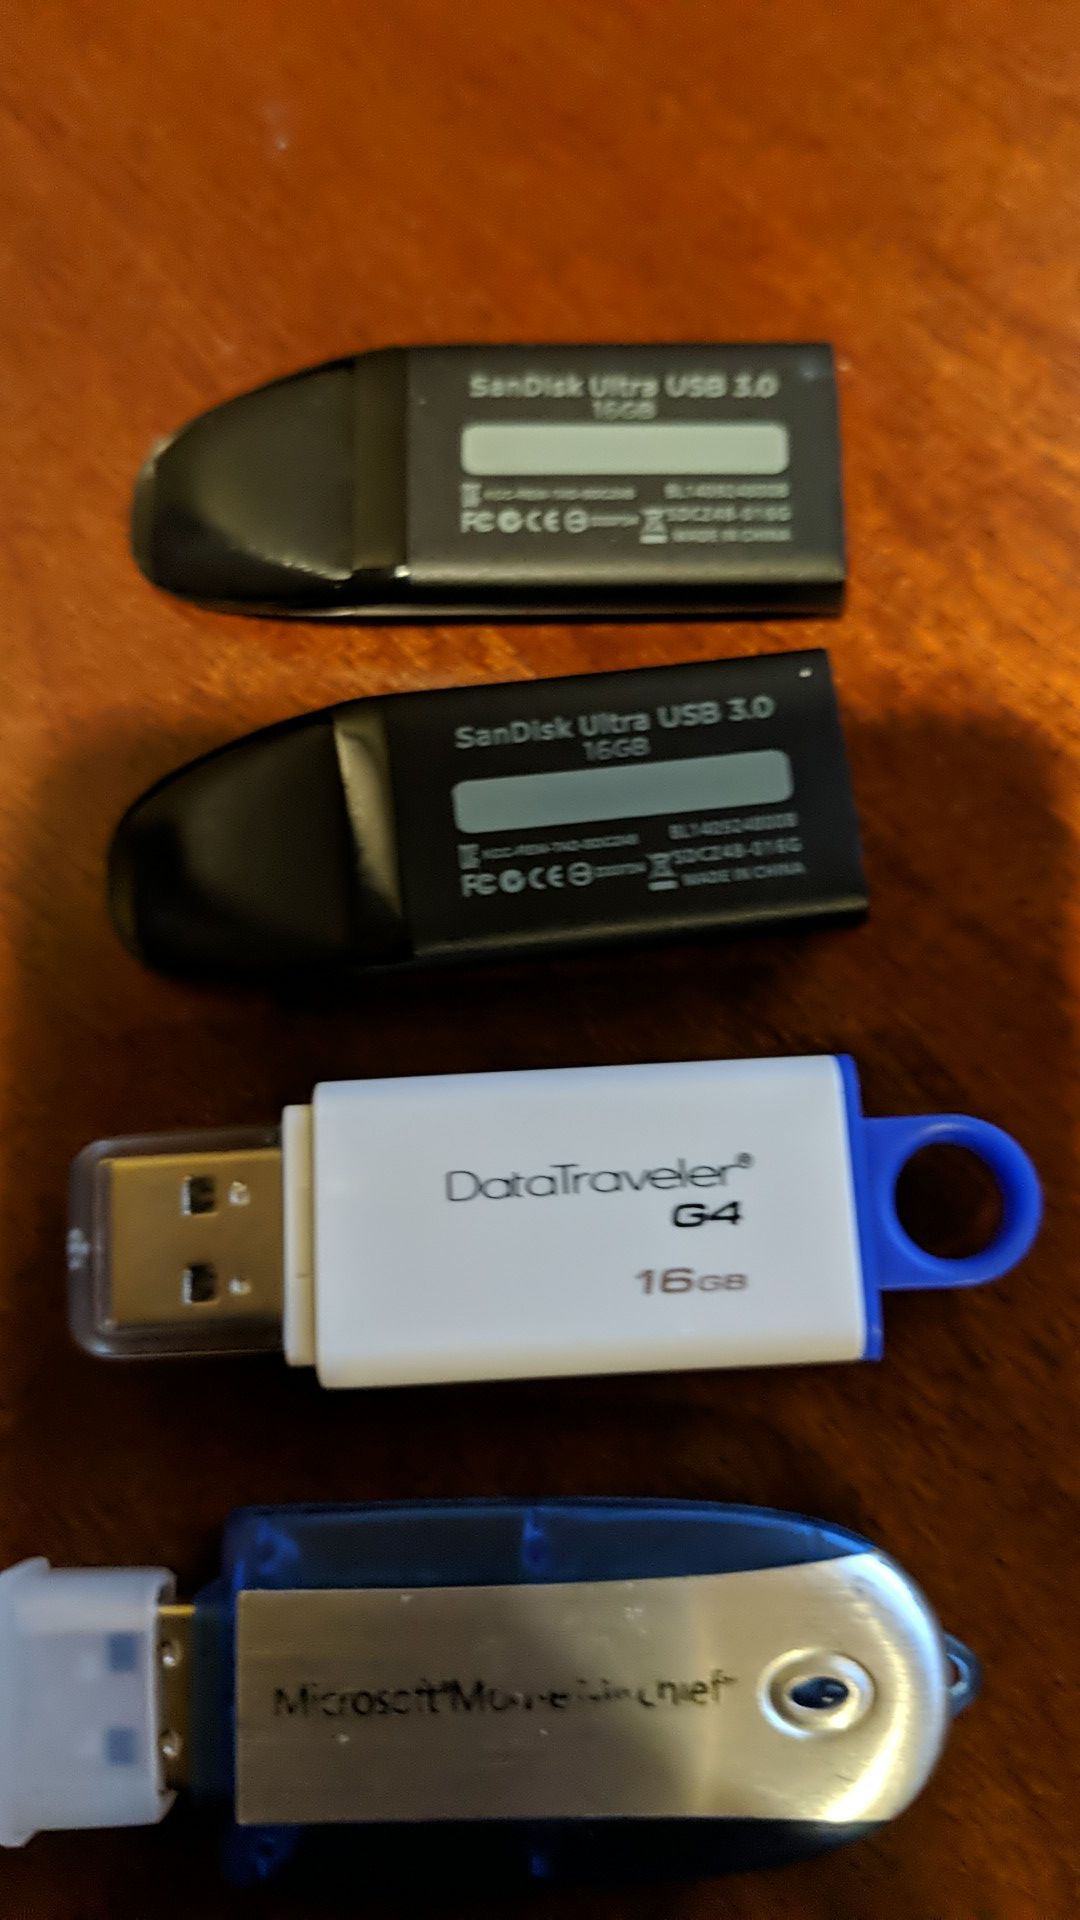 16gb USB 3.0 flash drives